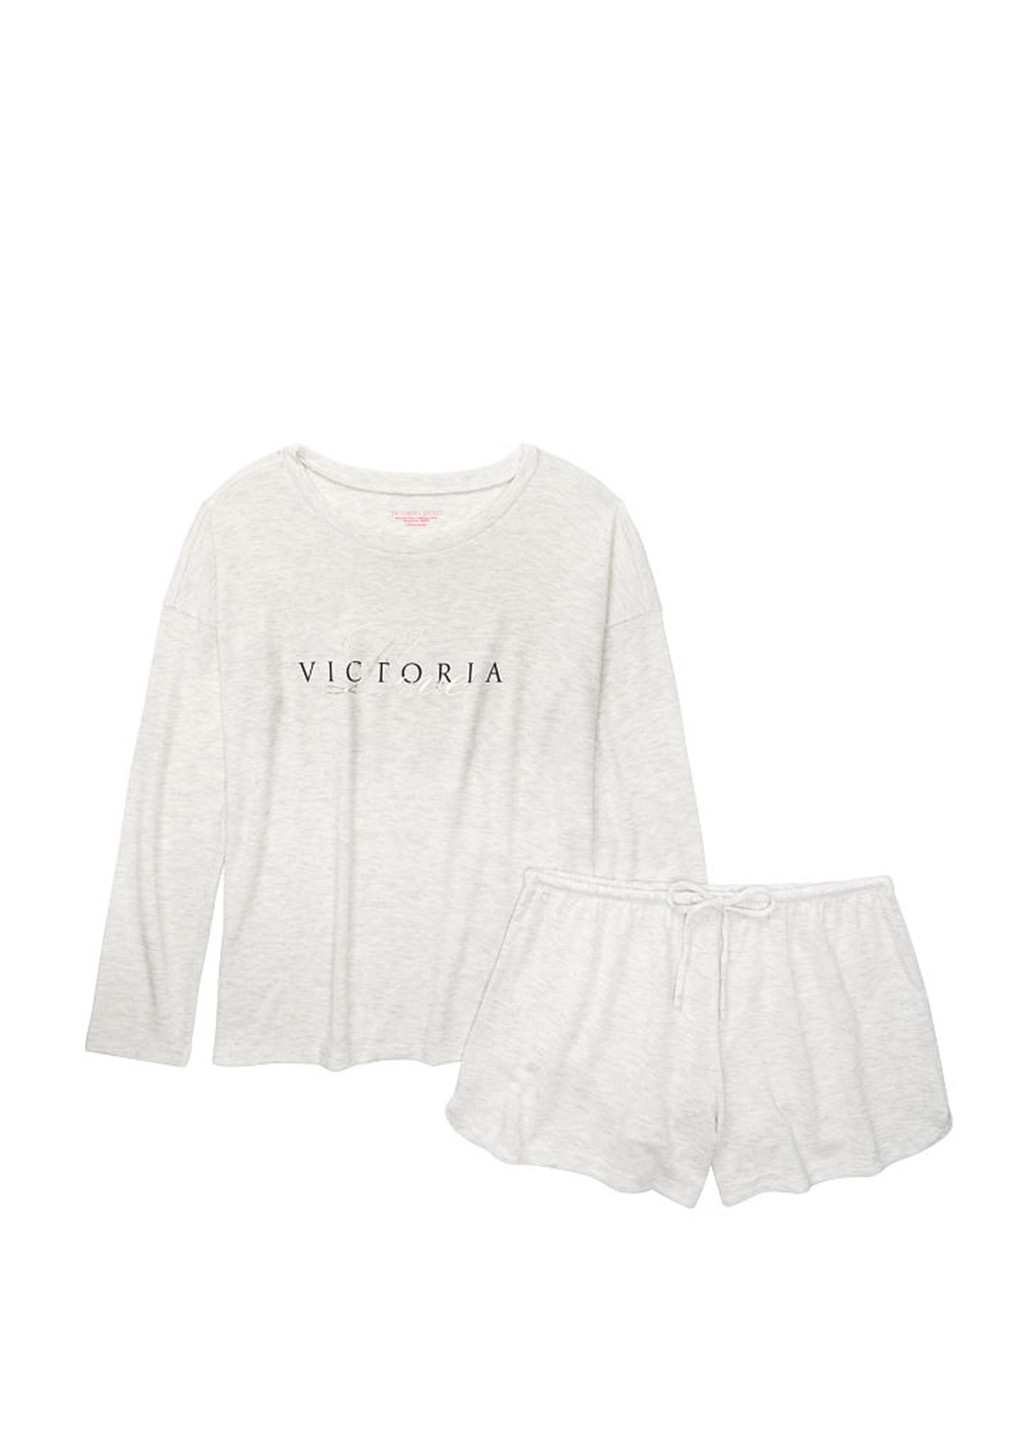 Светло-серая всесезон пижама (лонгслив, шорты) лонгслив + шорты Victoria's Secret